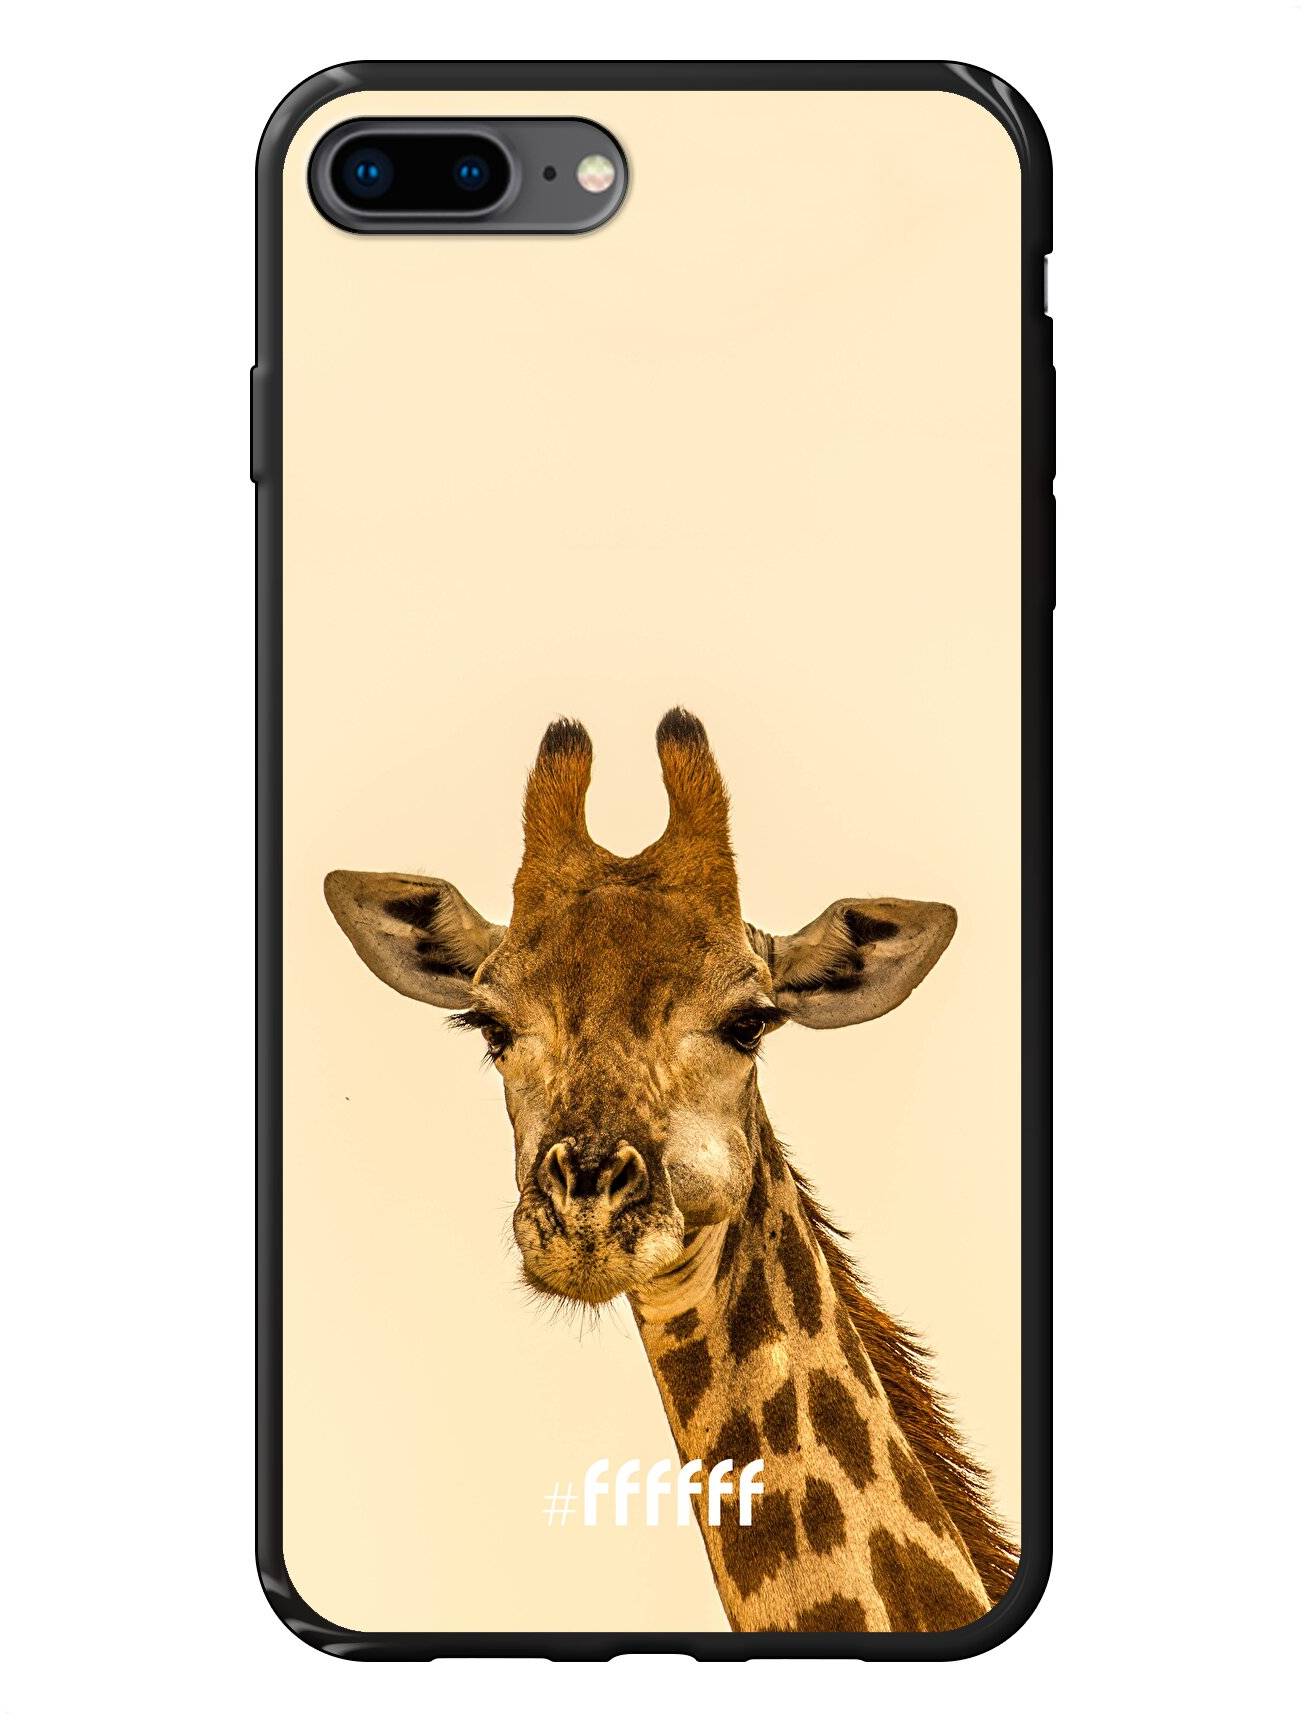 Giraffe iPhone 7 Plus